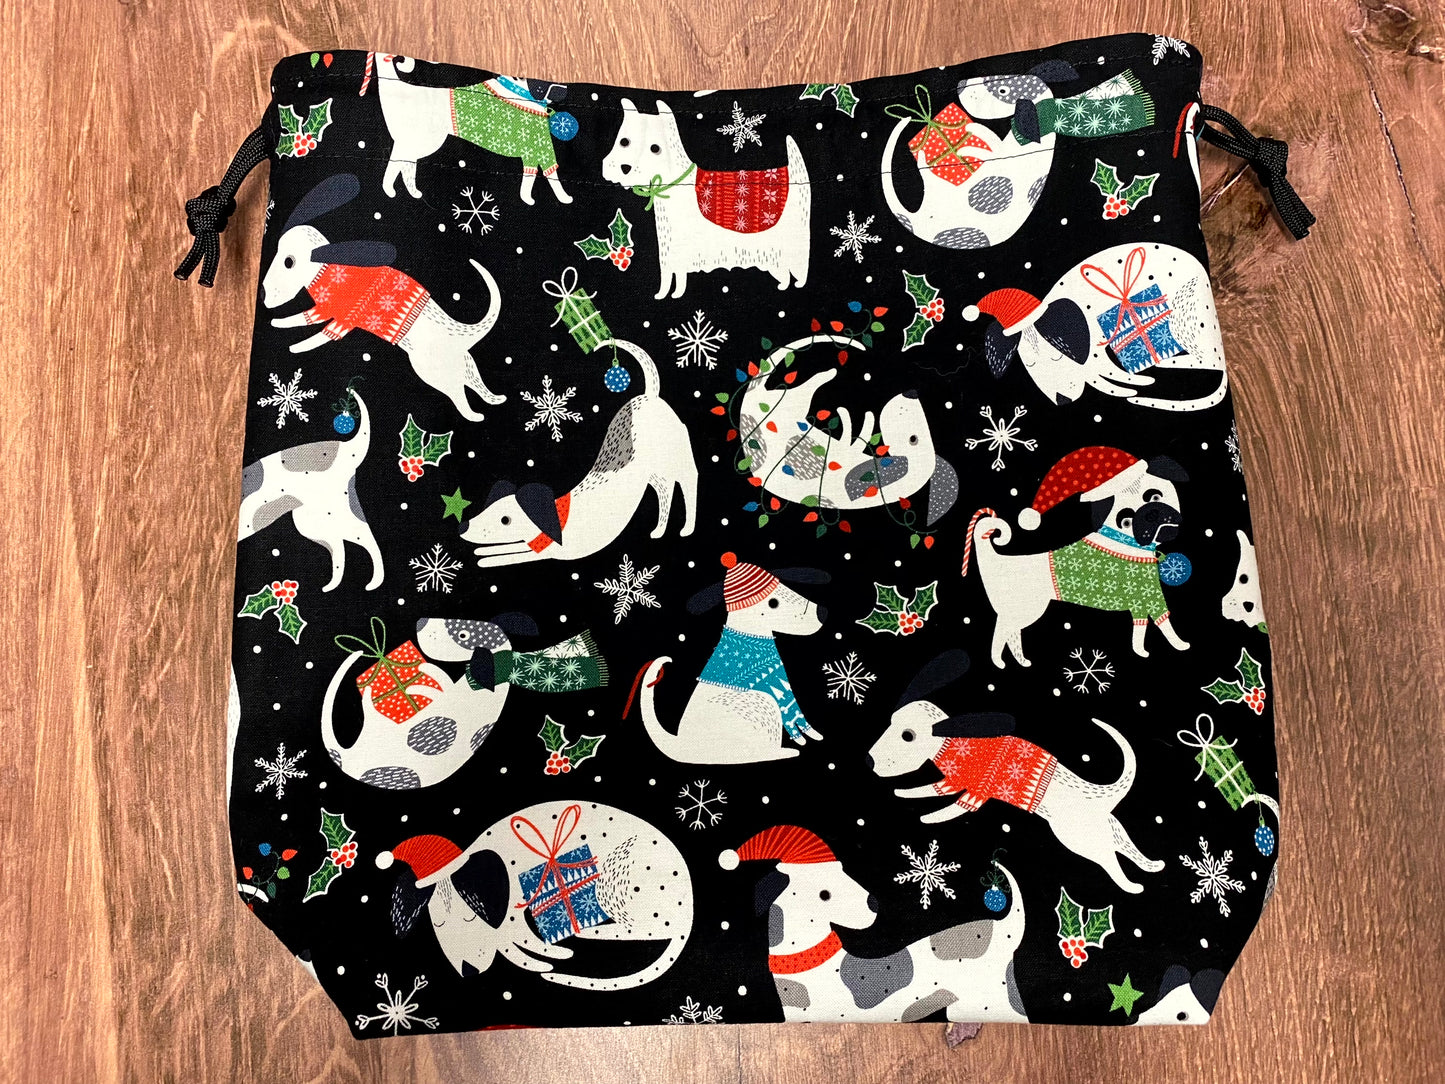 Dog Project Bag - Drawstring Bag – Crochet Bag - Knitting Bag - Cross Stitch Bag - Christmas - Holiday - Pug - Terrier